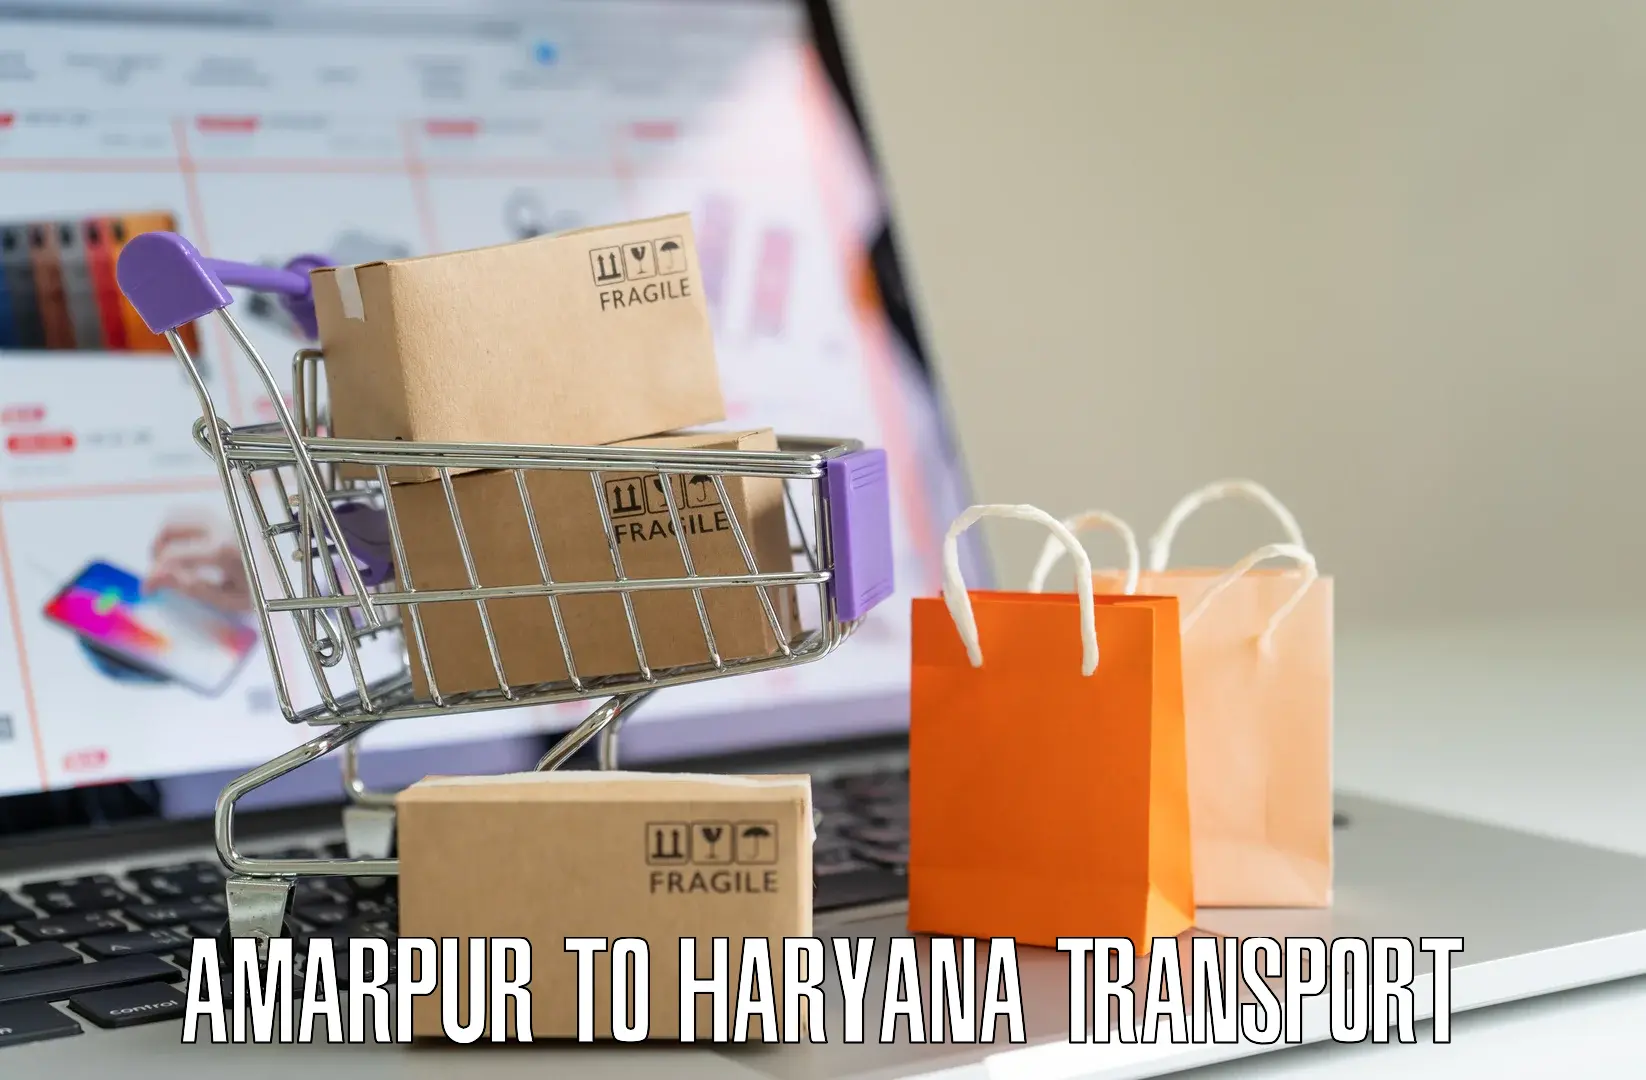 Sending bike to another city Amarpur to Narwana